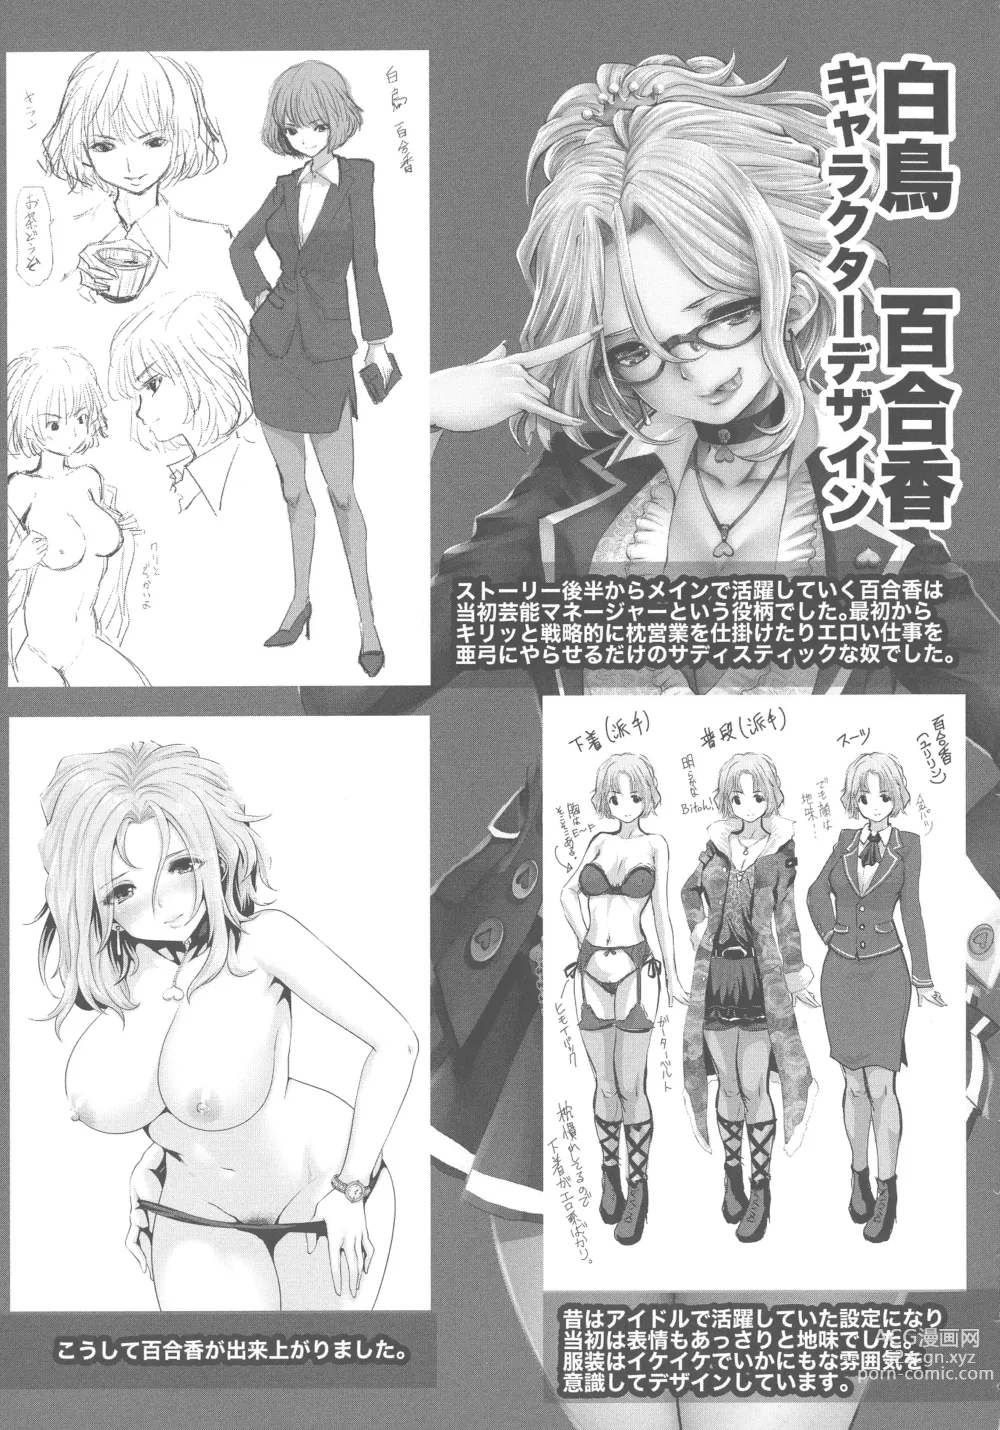 Page 211 of manga Idol Cum!